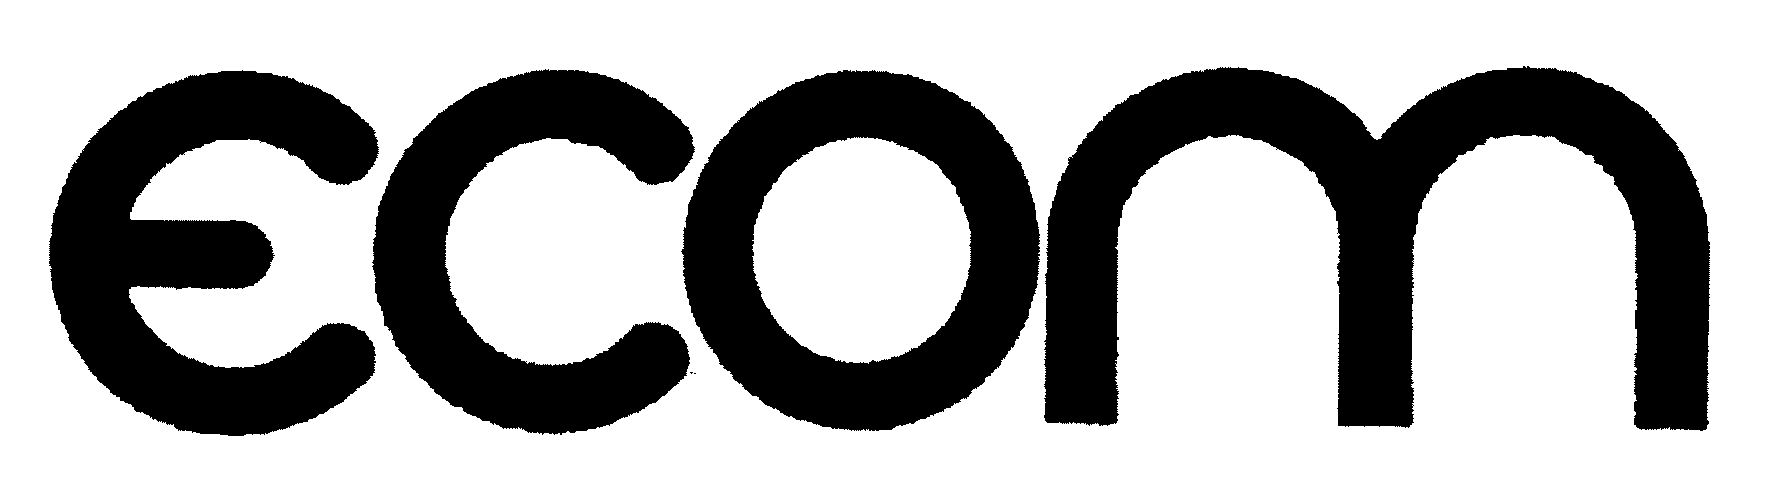 Trademark Logo ECOM